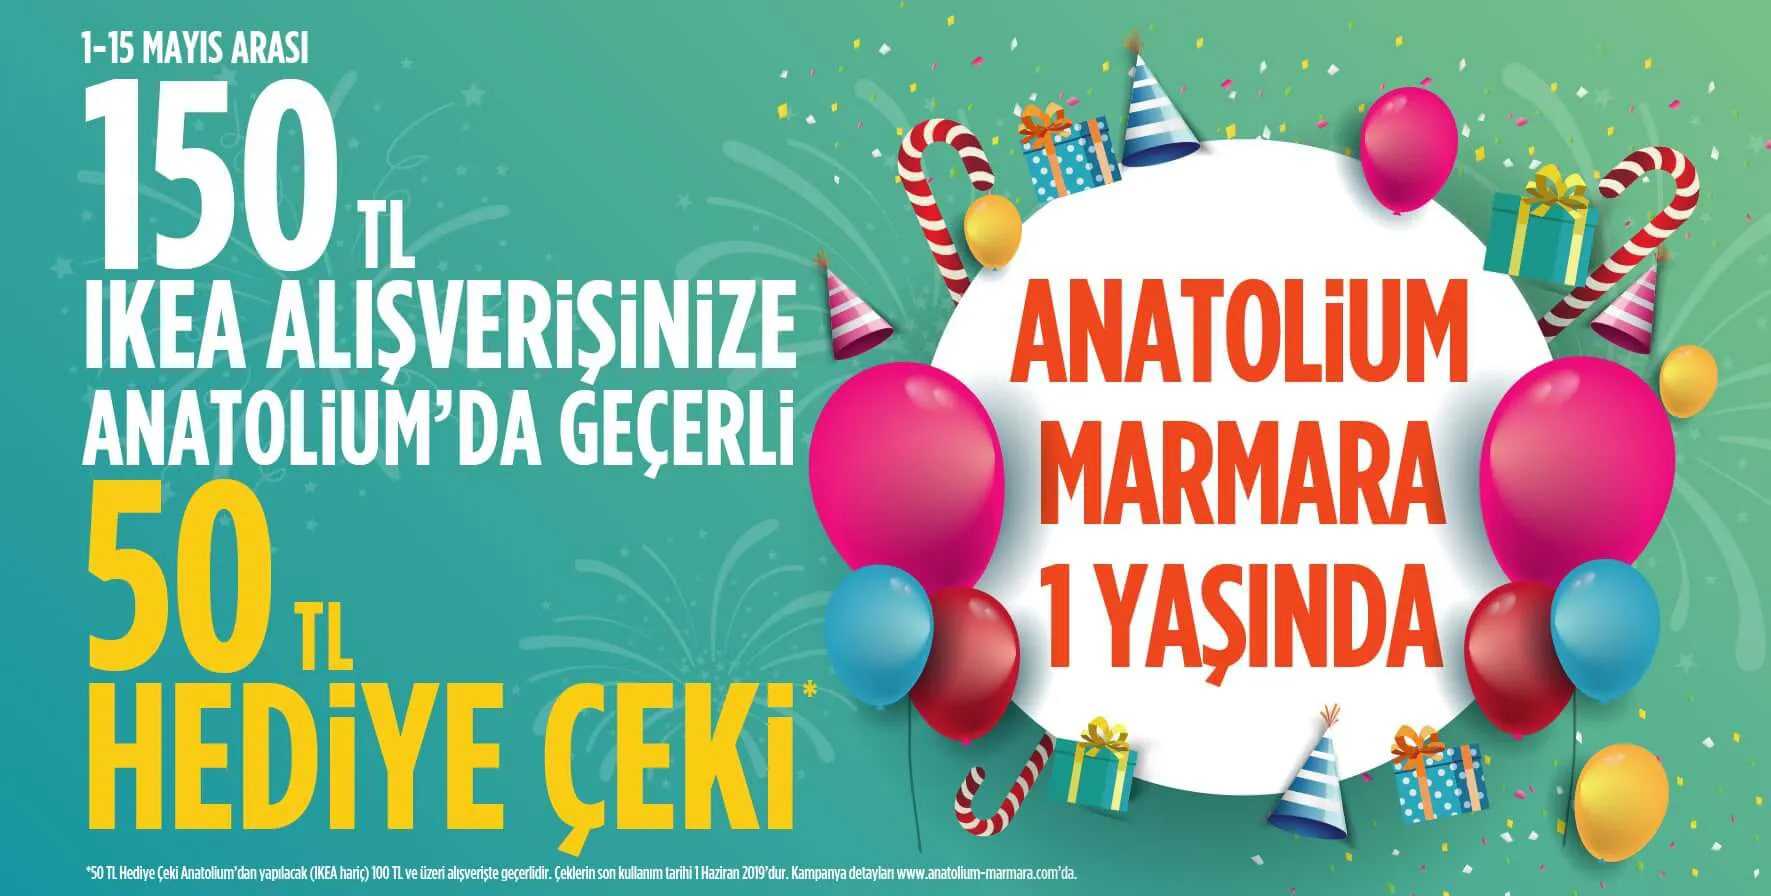 Anatolium Marmara'nın 1. yaşına özel sürpriz hediyeler sizi bekliyor.